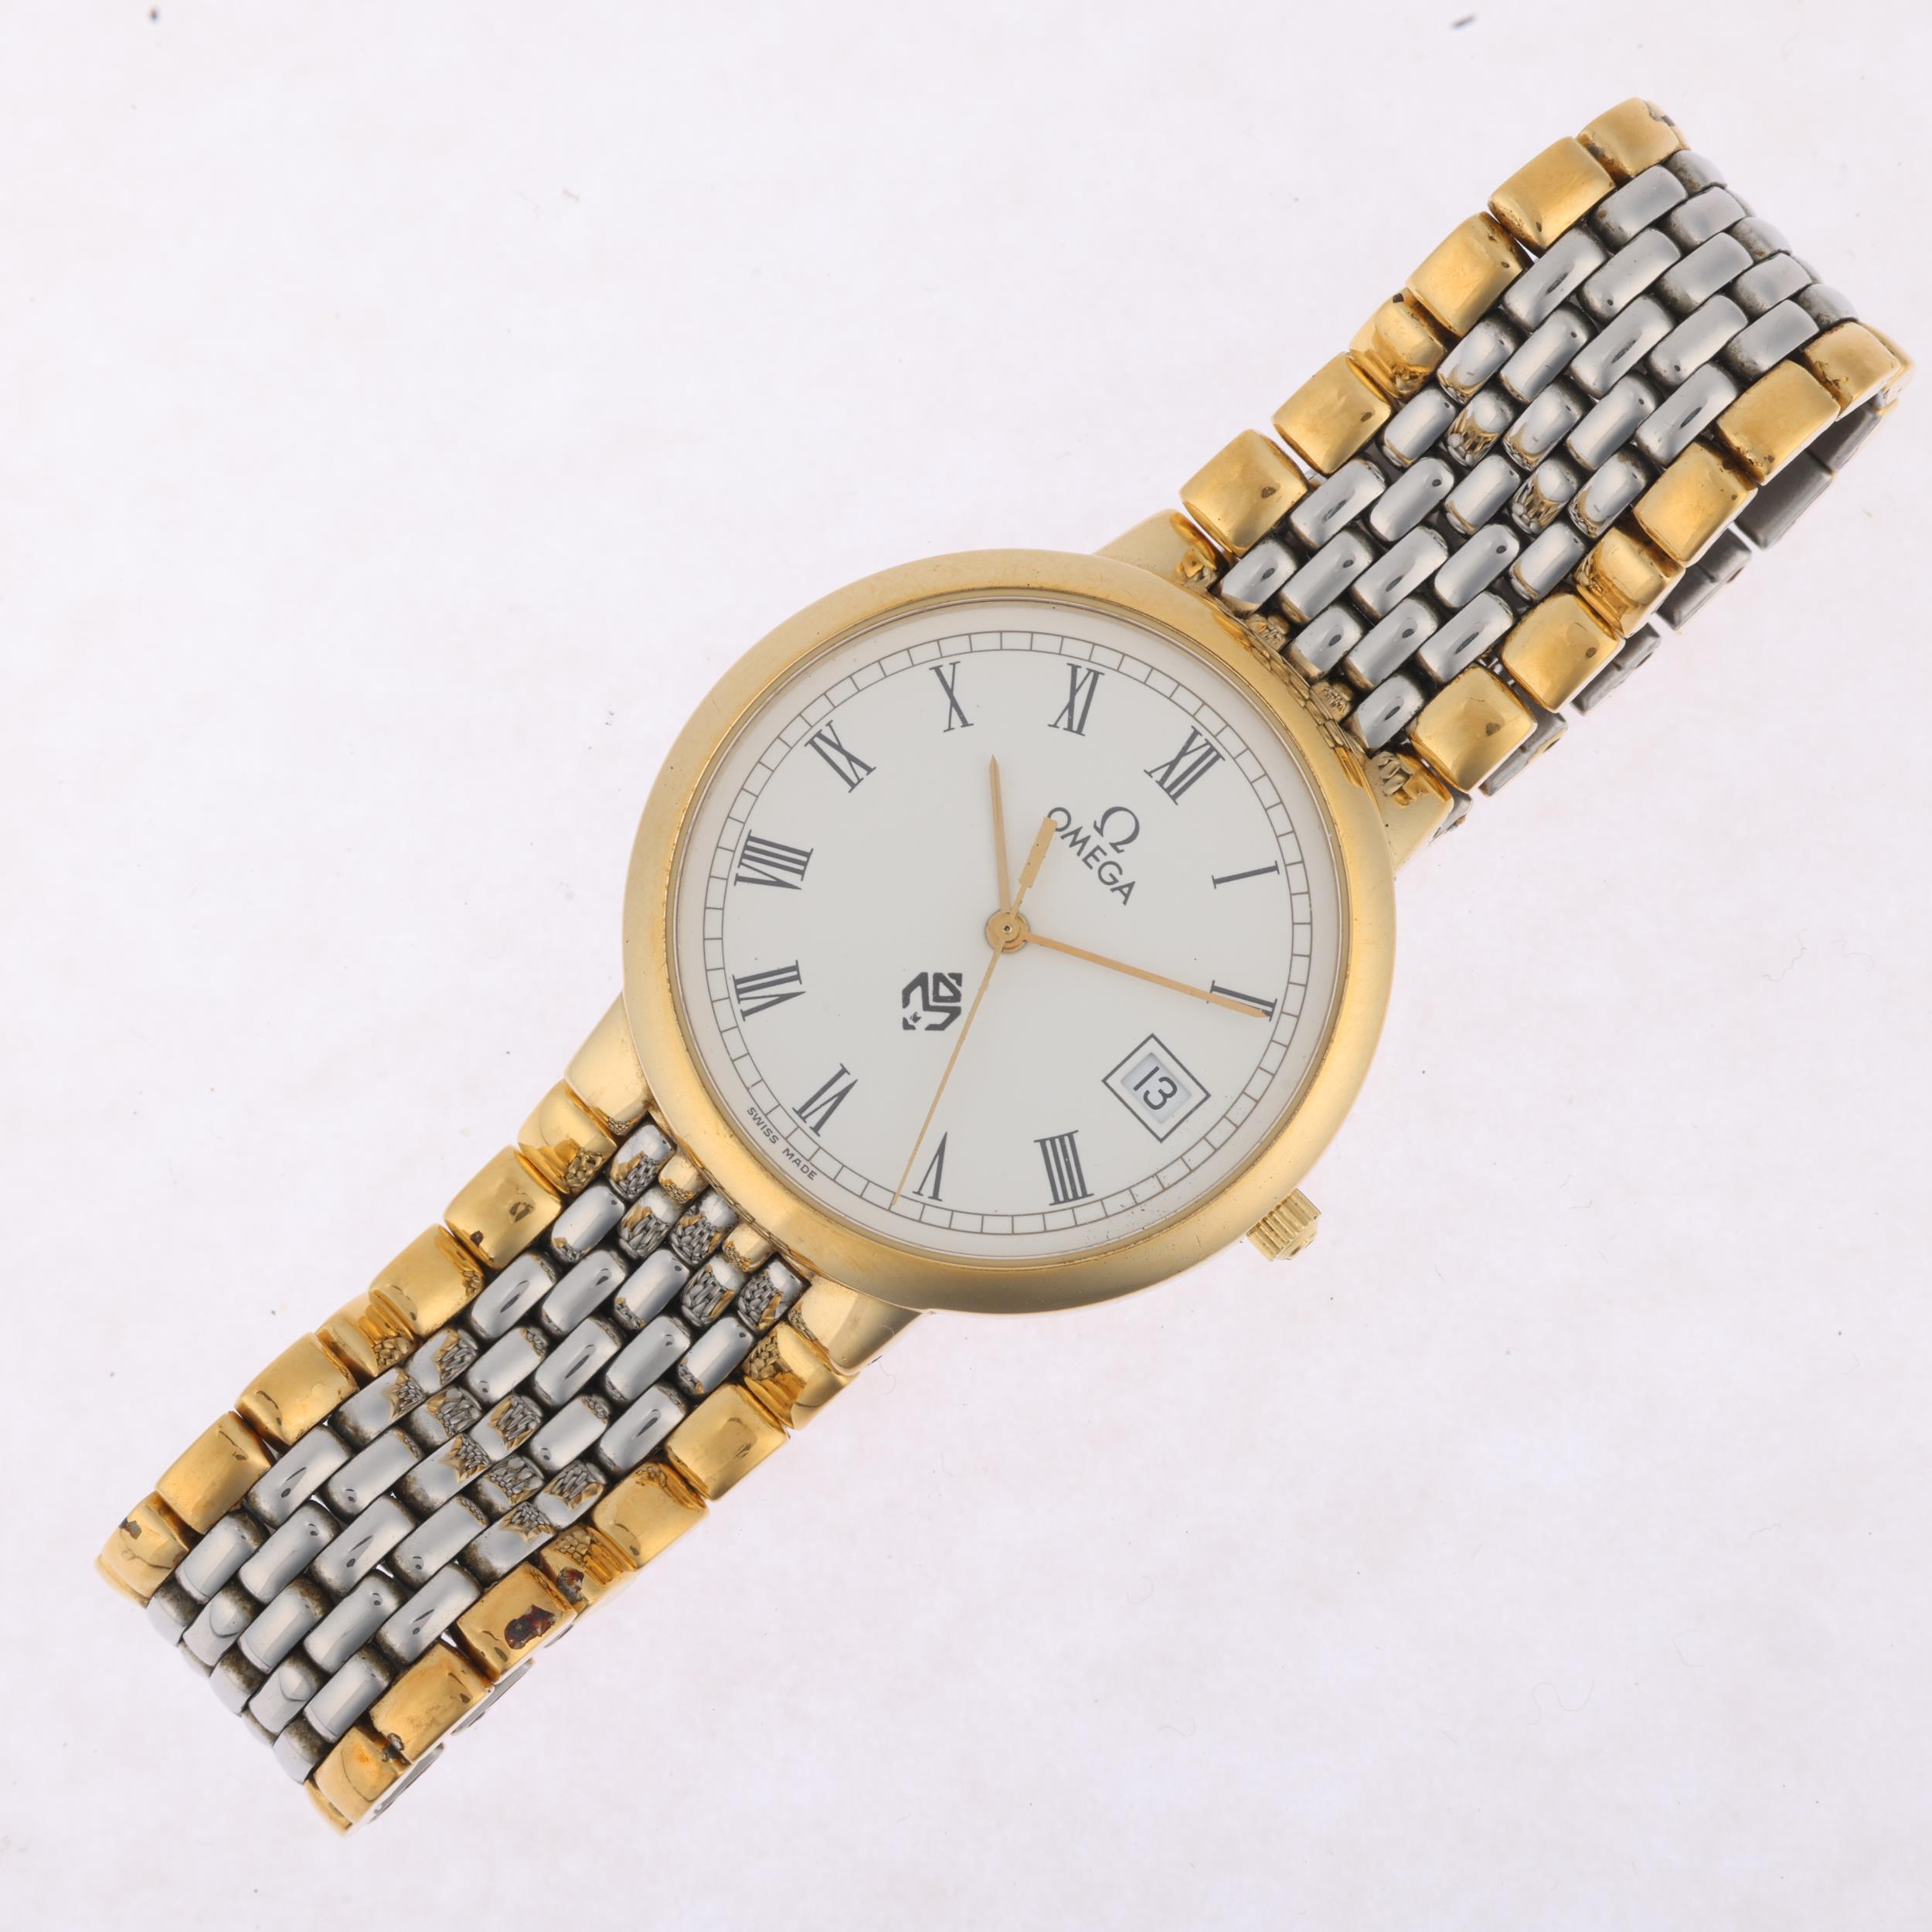 OMEGA - a gold plated stainless steel De Ville 'Meghraj Group' quartz calendar bracelet watch, - Image 2 of 5